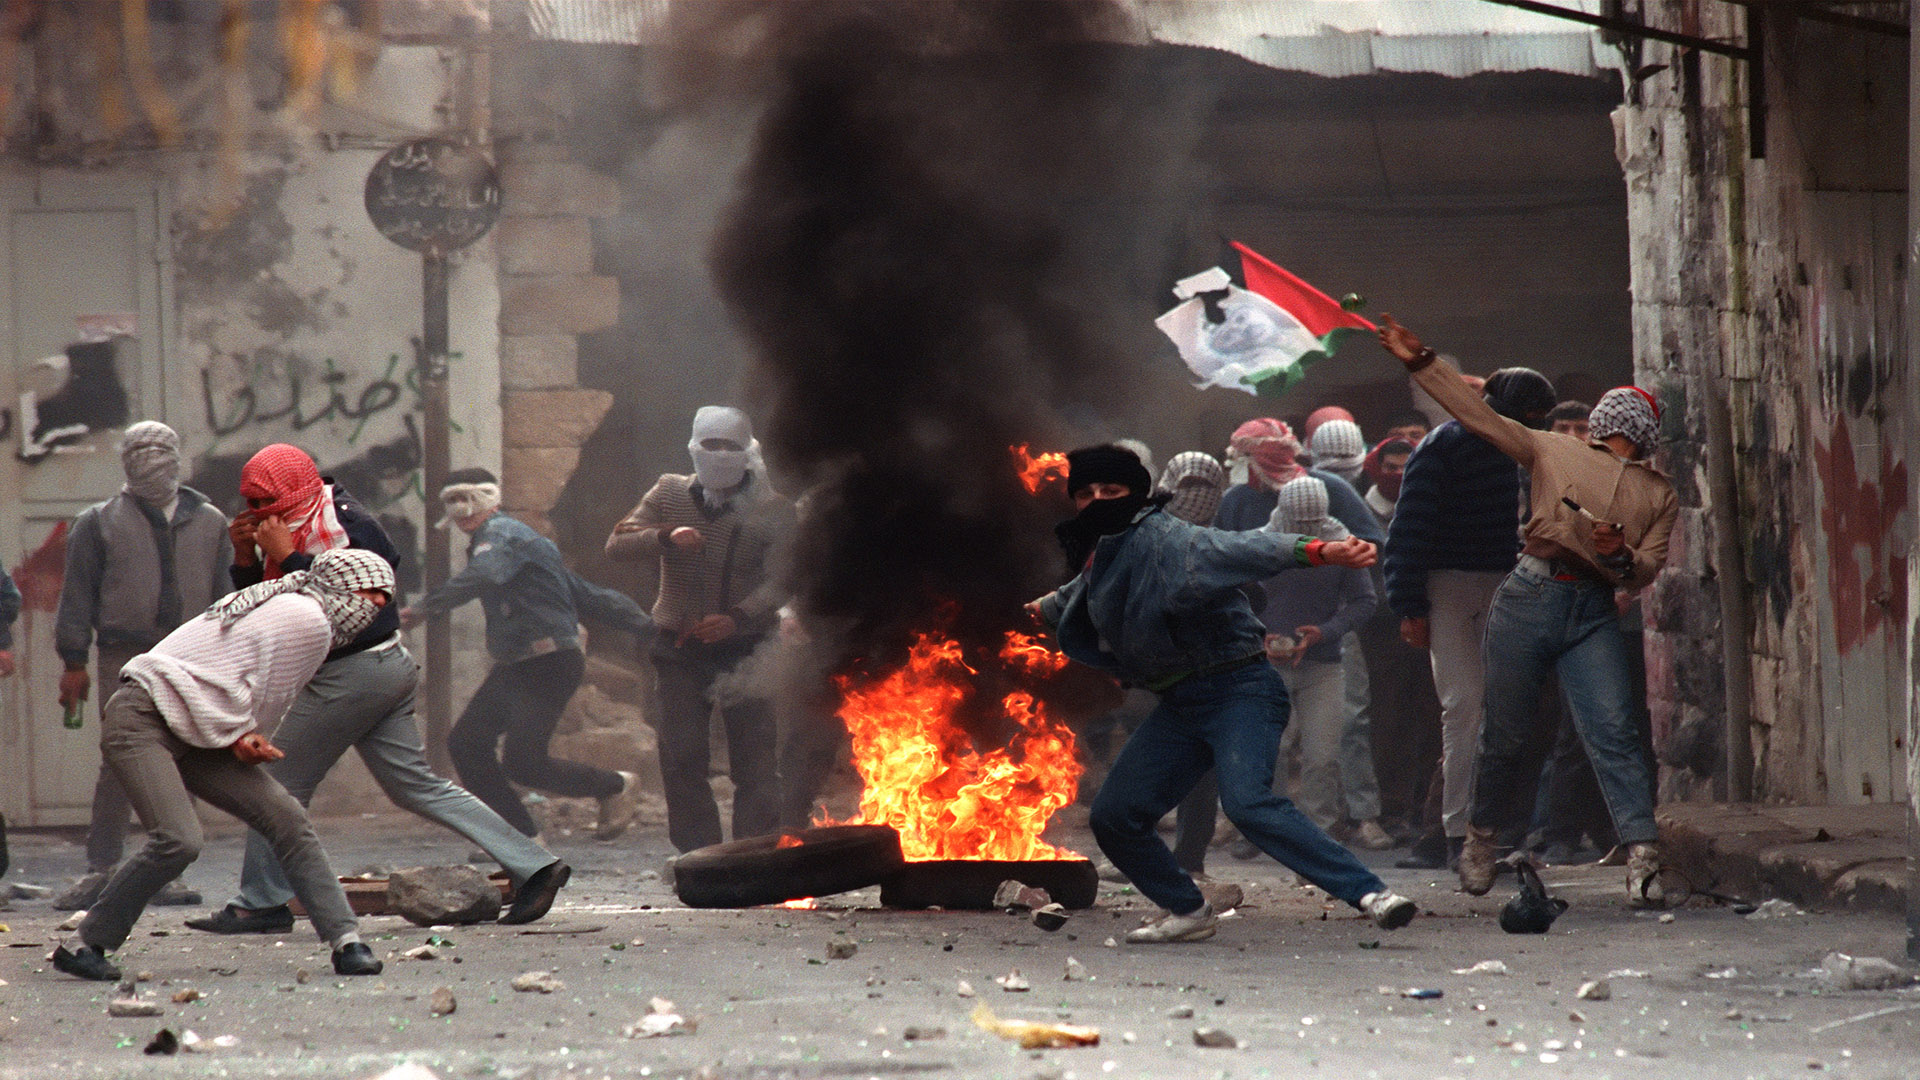 لماذا تتأخر الانتفاضة الفلسطينية